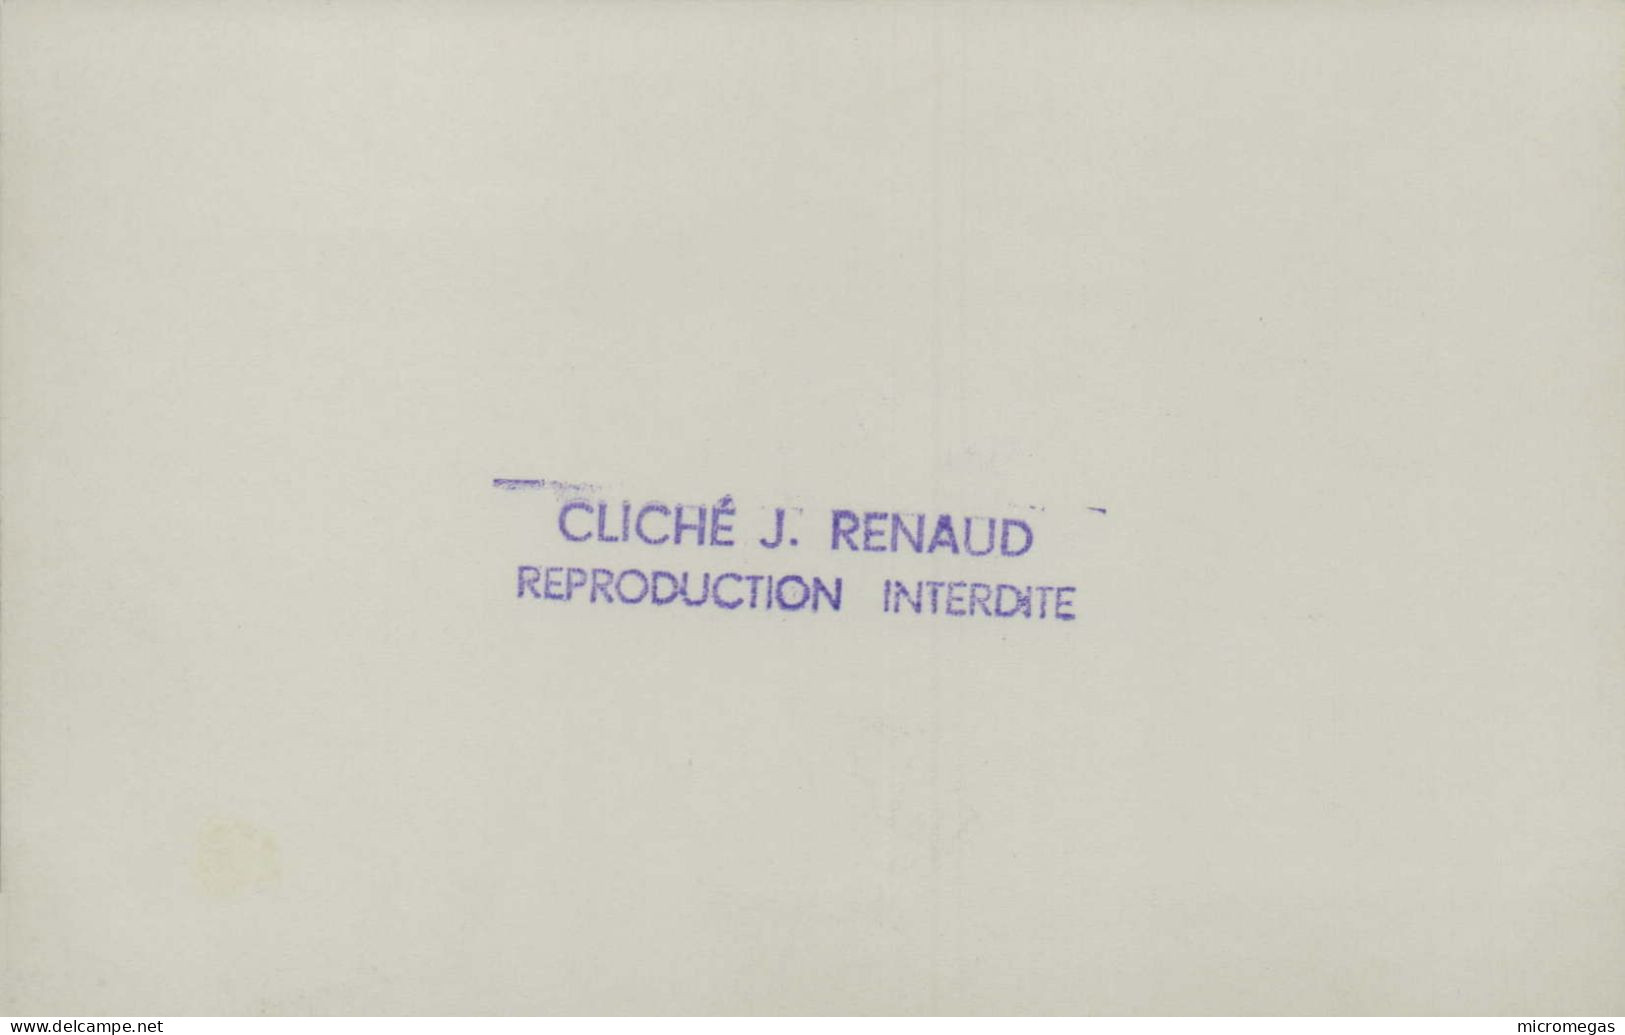 Locomotive 38-137 - Cliché J. Renaud - Treinen